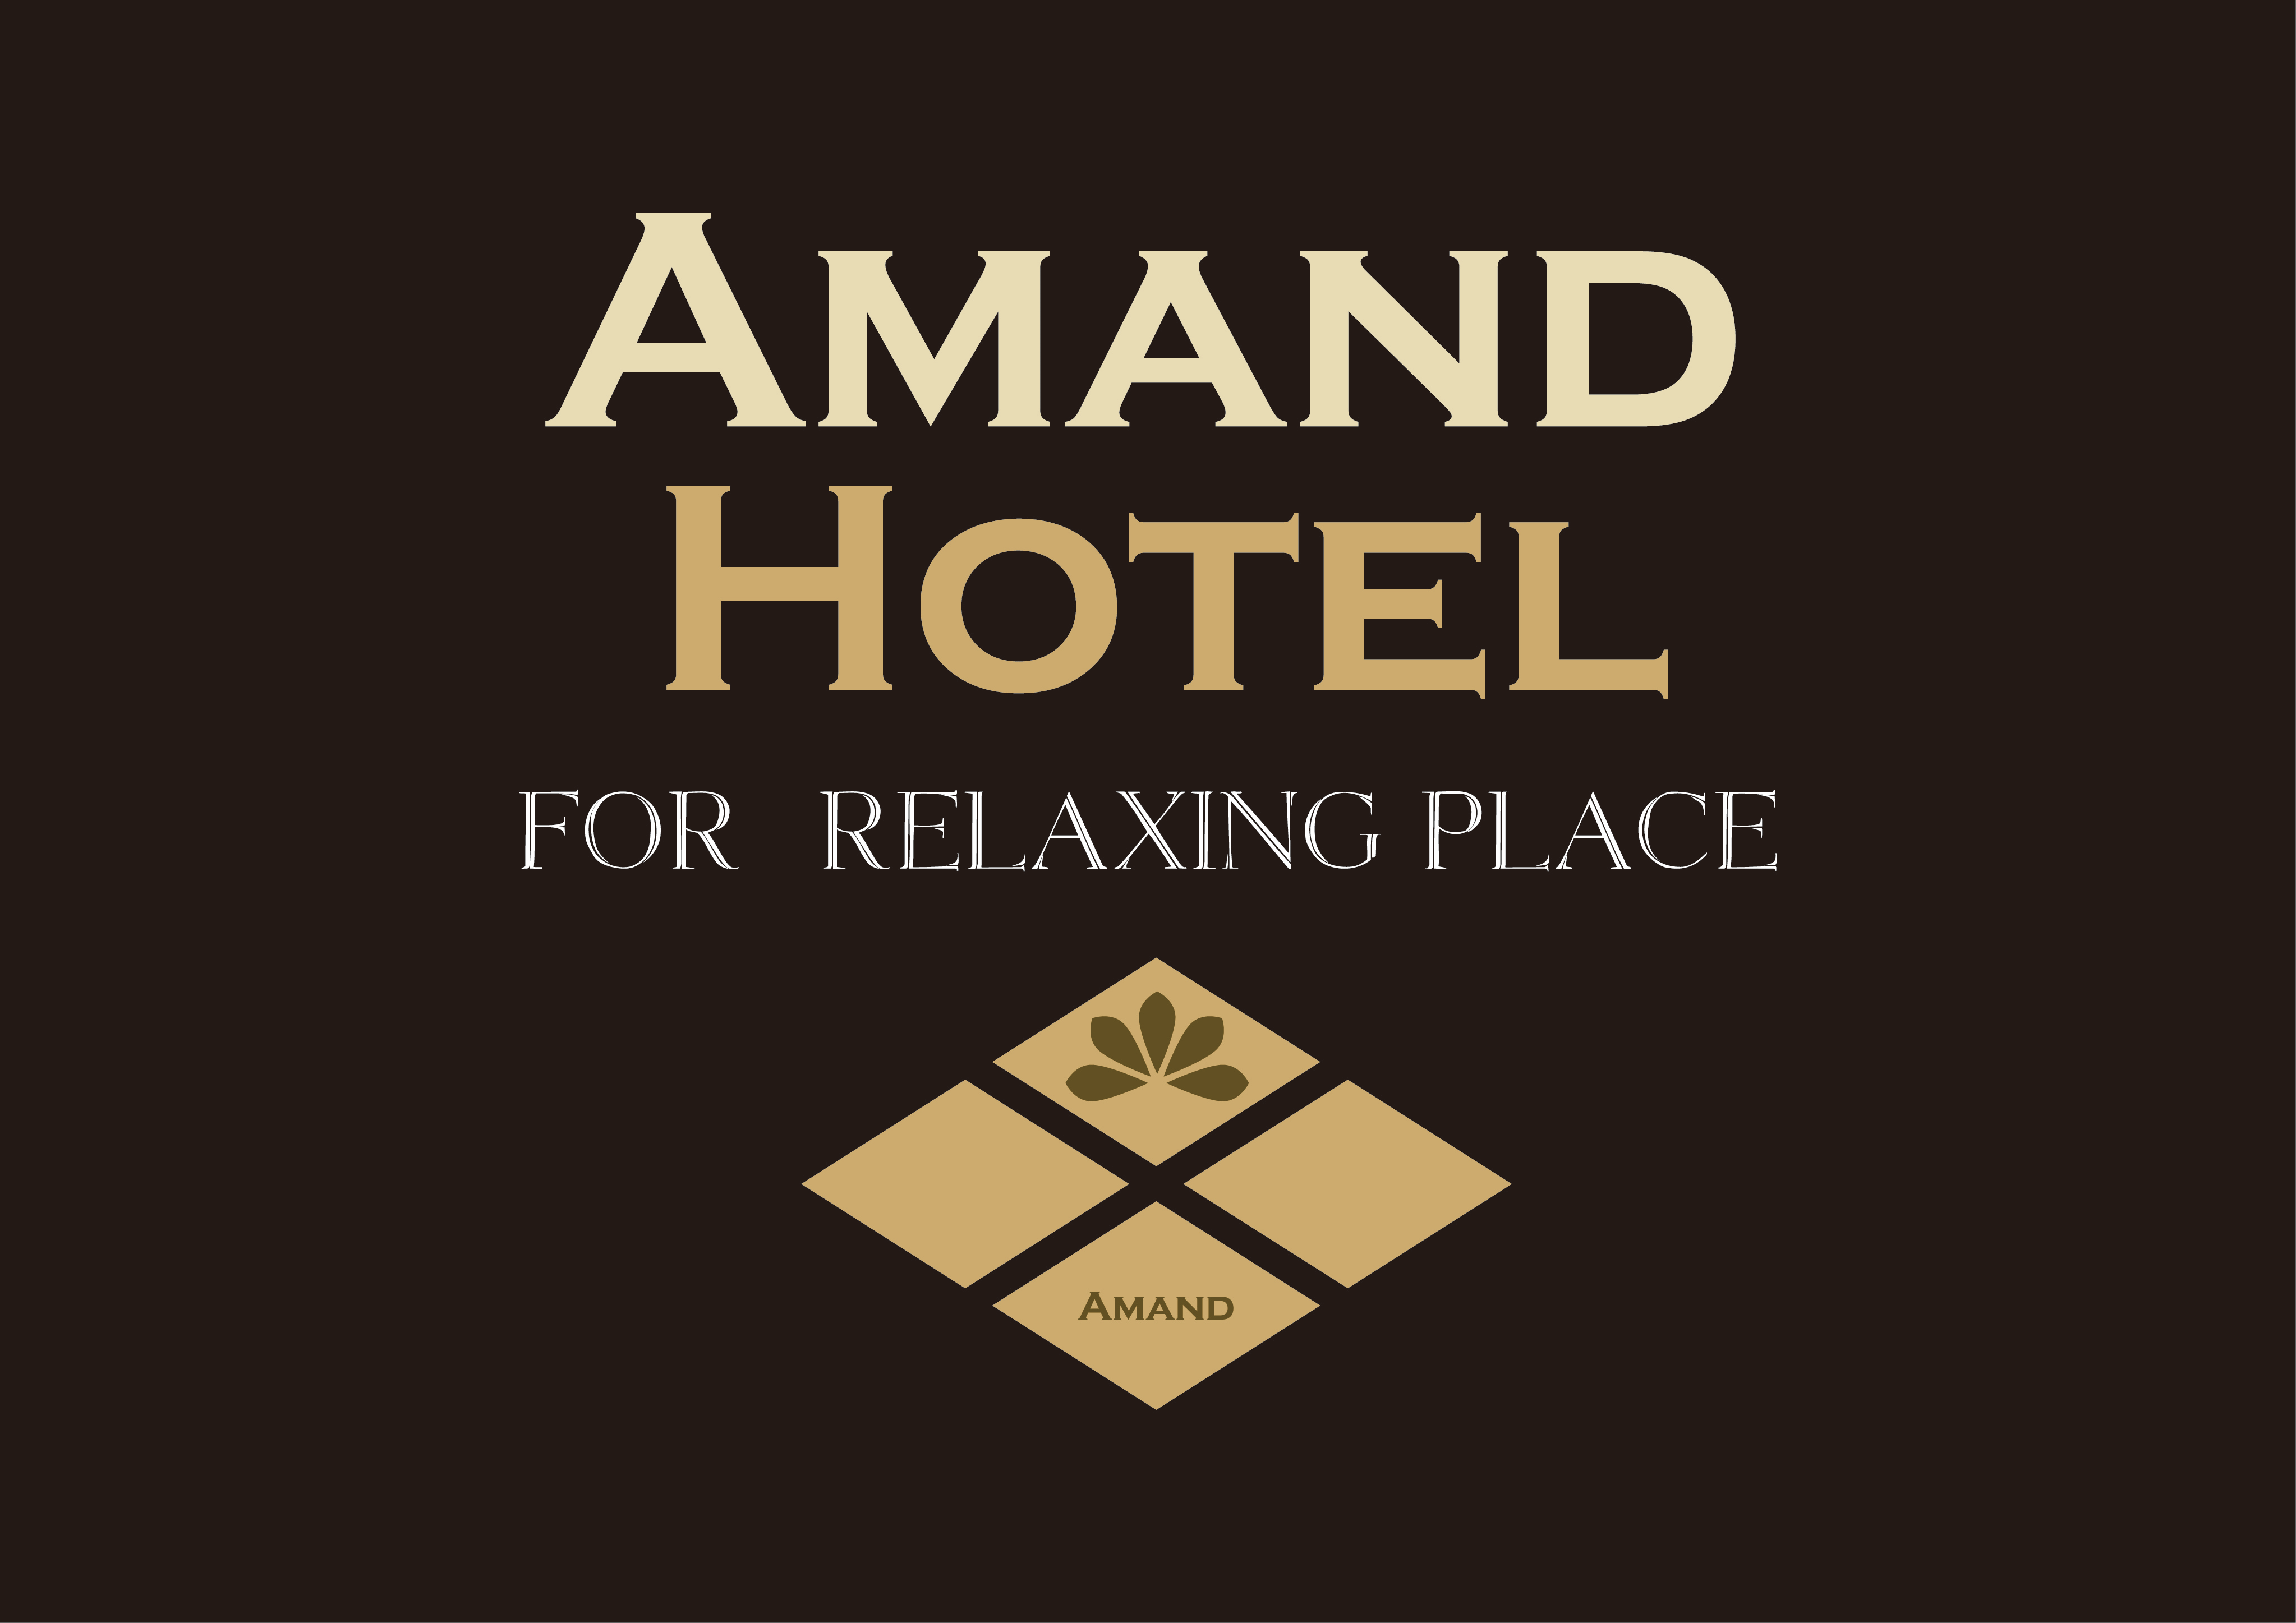 AMAND HOTEL